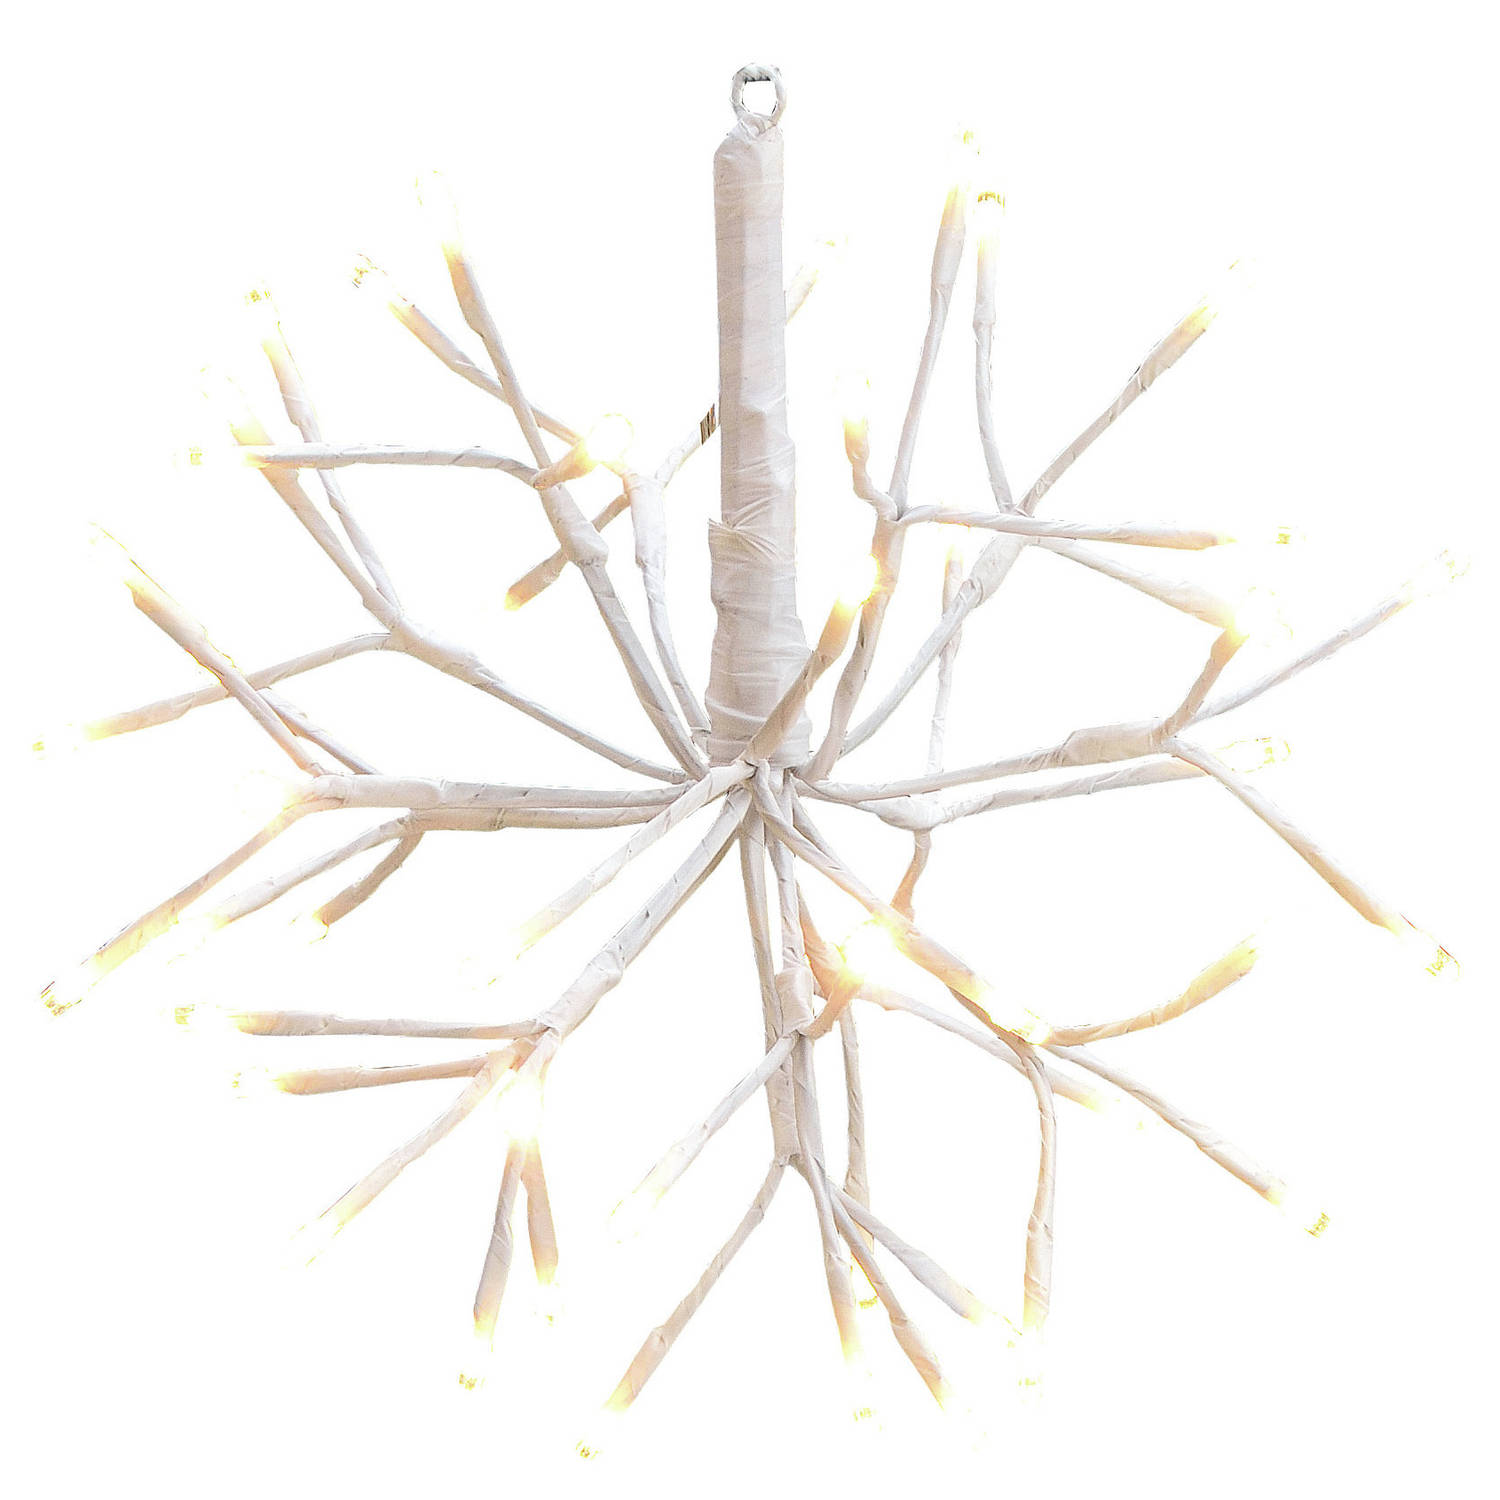 Kerstverlichting lichtbol 40 cm verlichte figuren vuurwerk kerstverlichting figuur